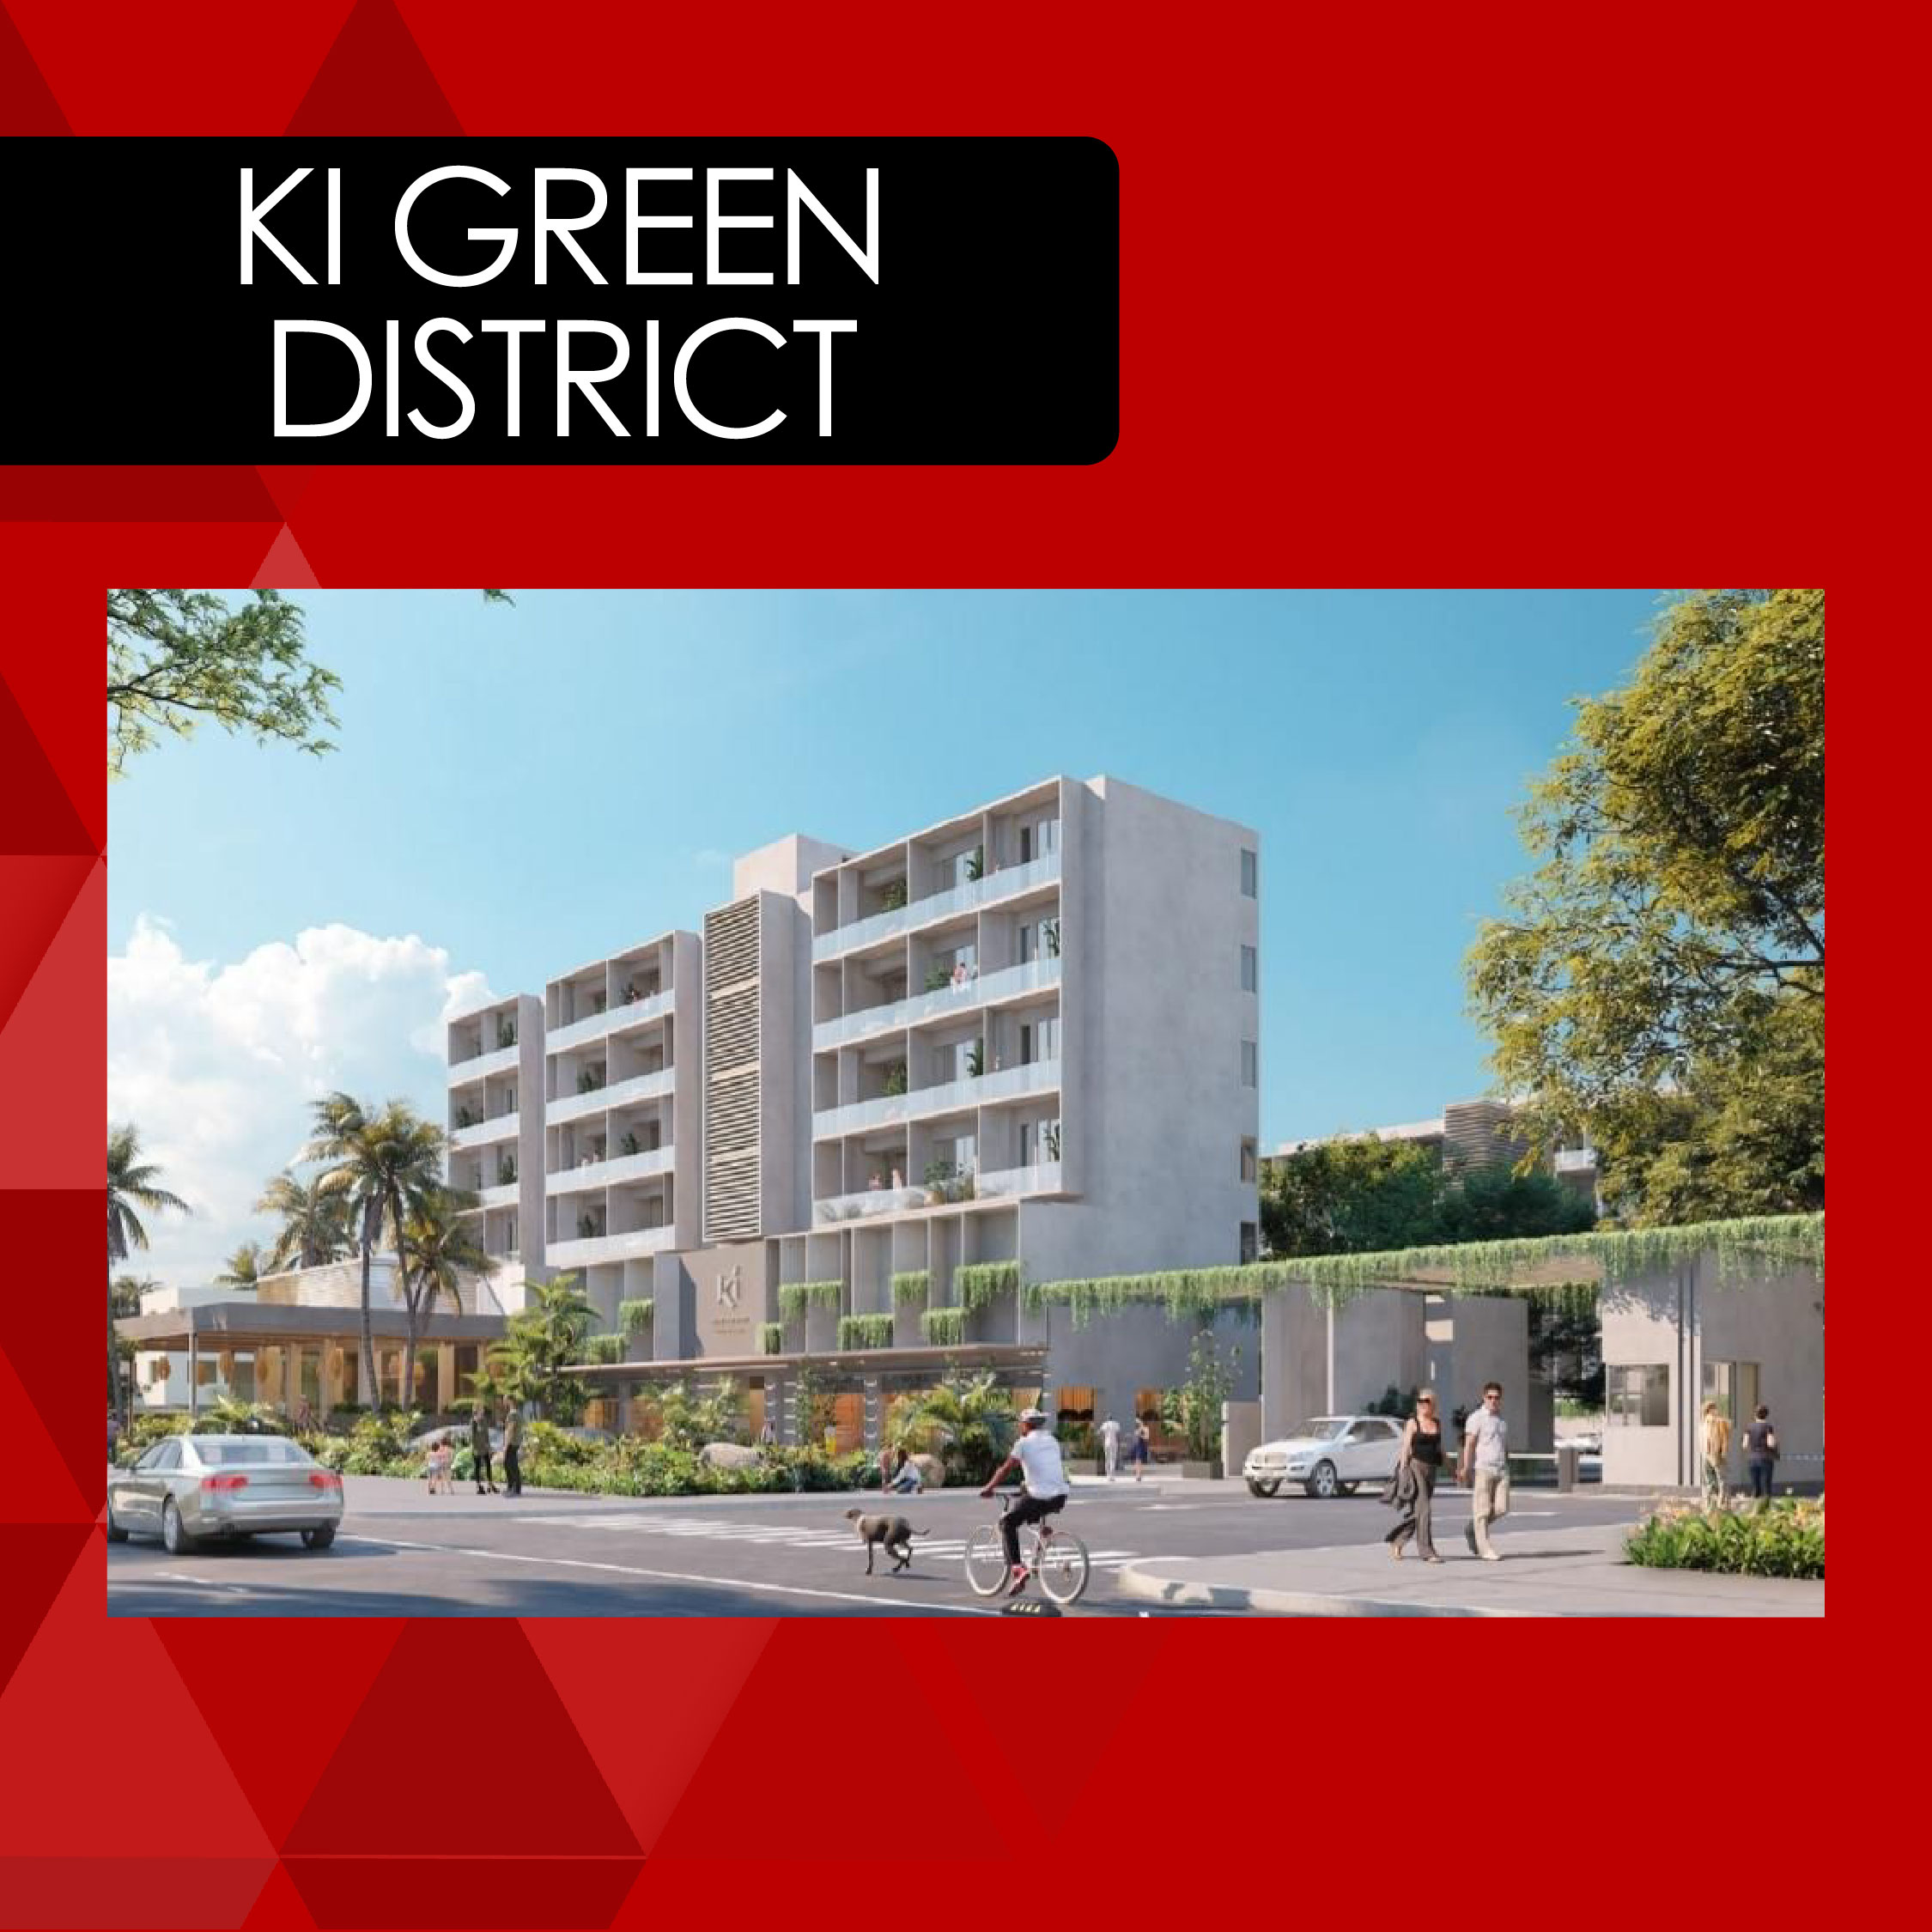 distrito ki green